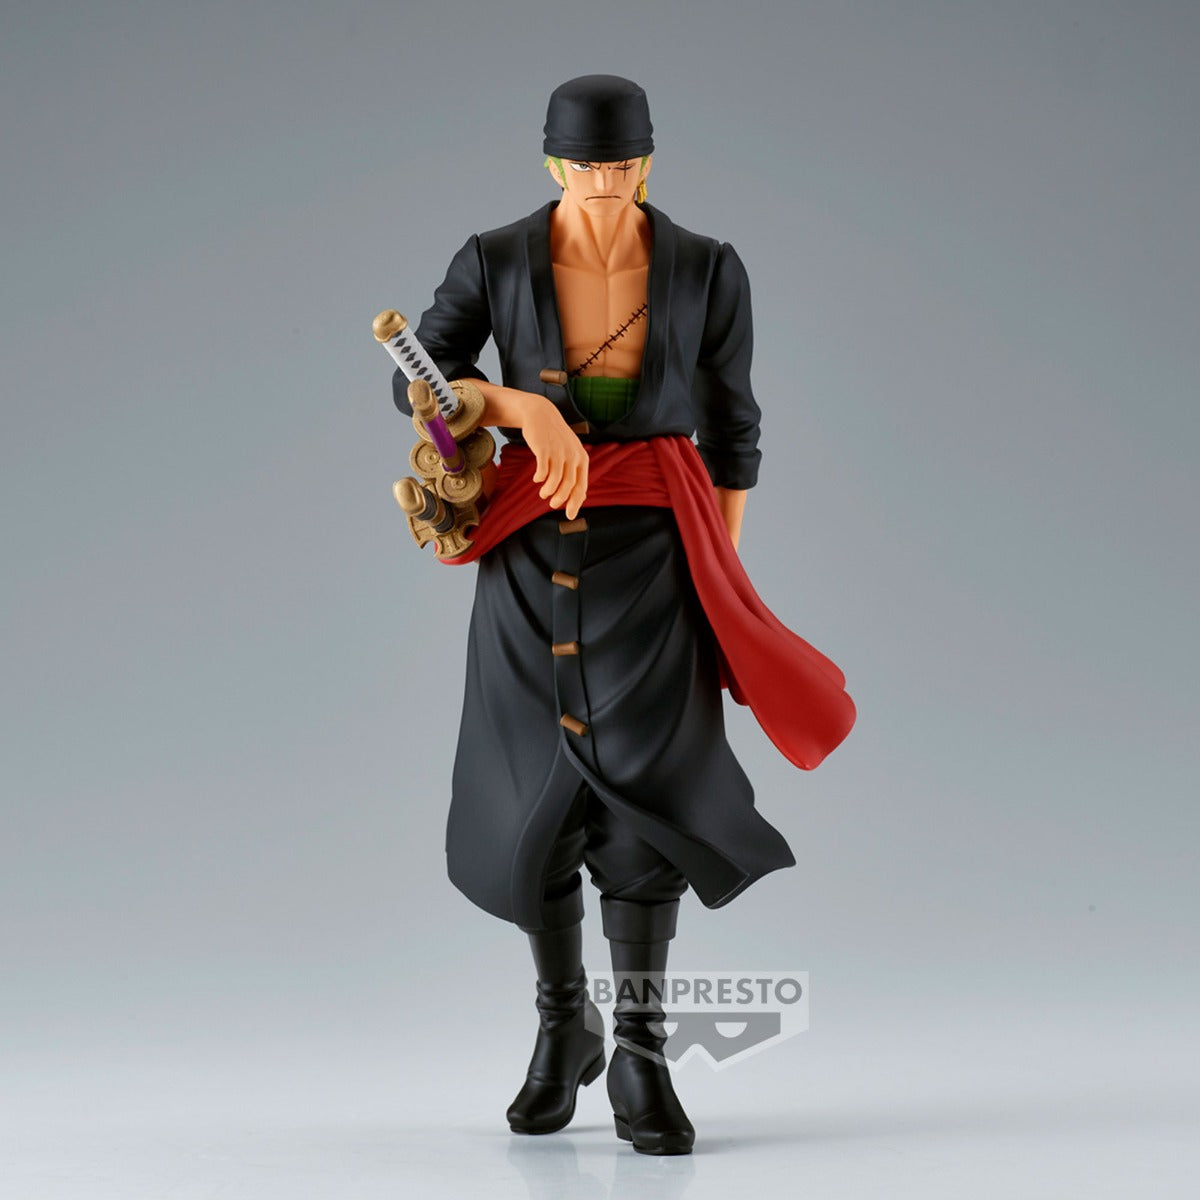 One Piece The Shukko-Roronoa ZoroBANPRESTO Doll Toys 4983164880823